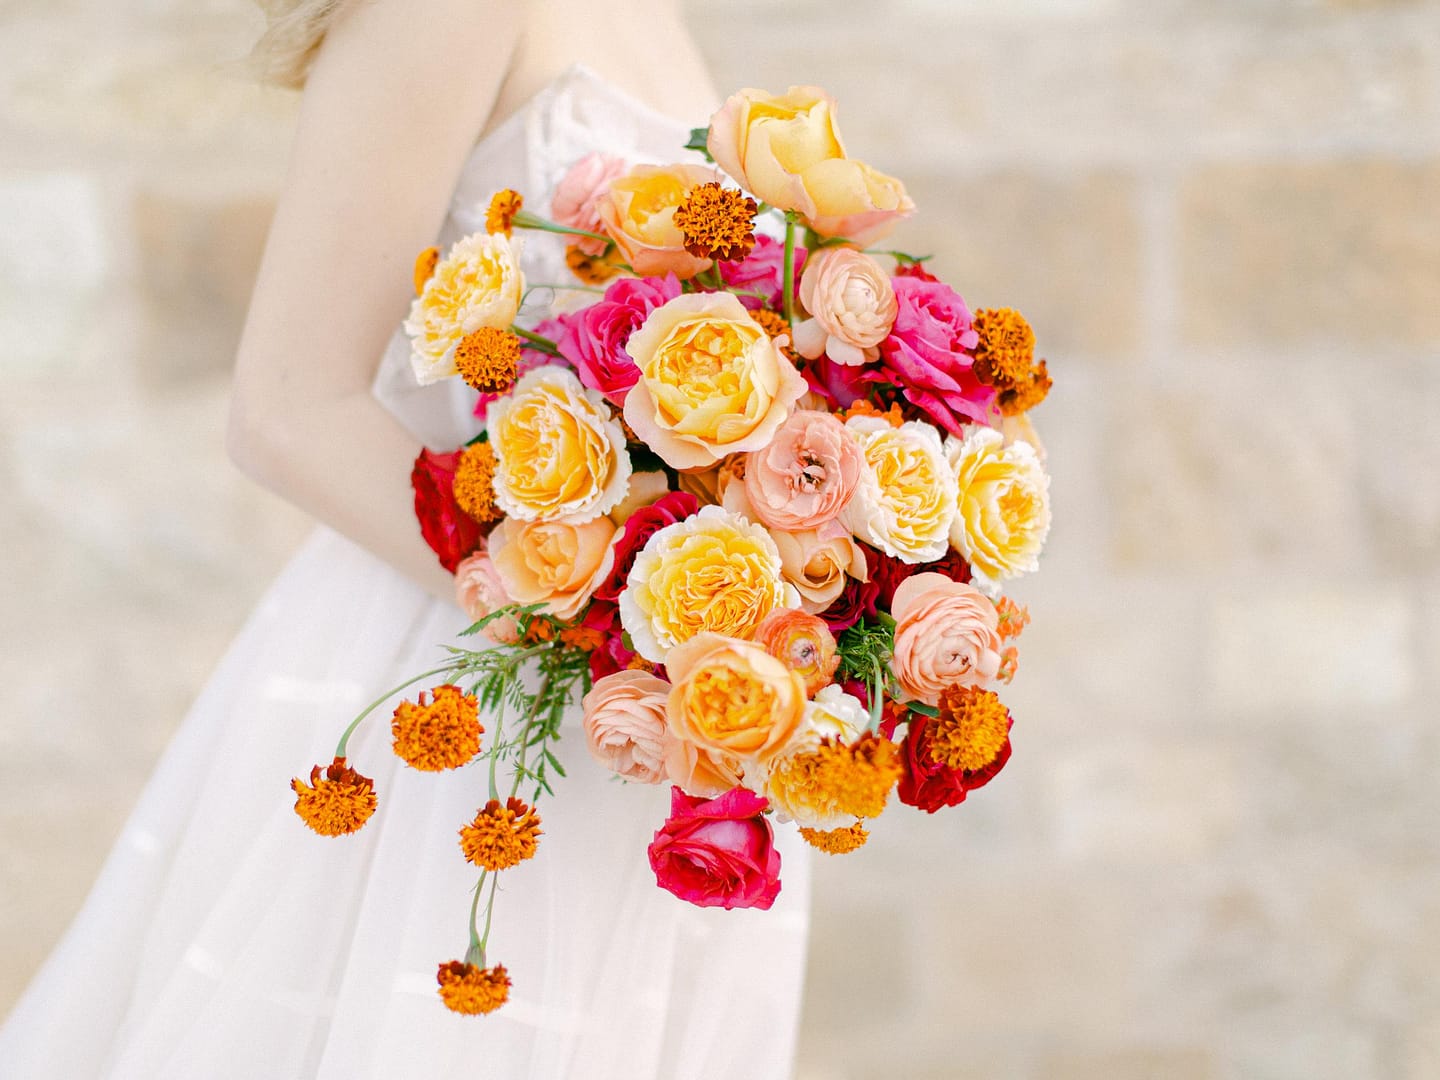 باقة الزفاف مع زهور الزفاف الزاهية